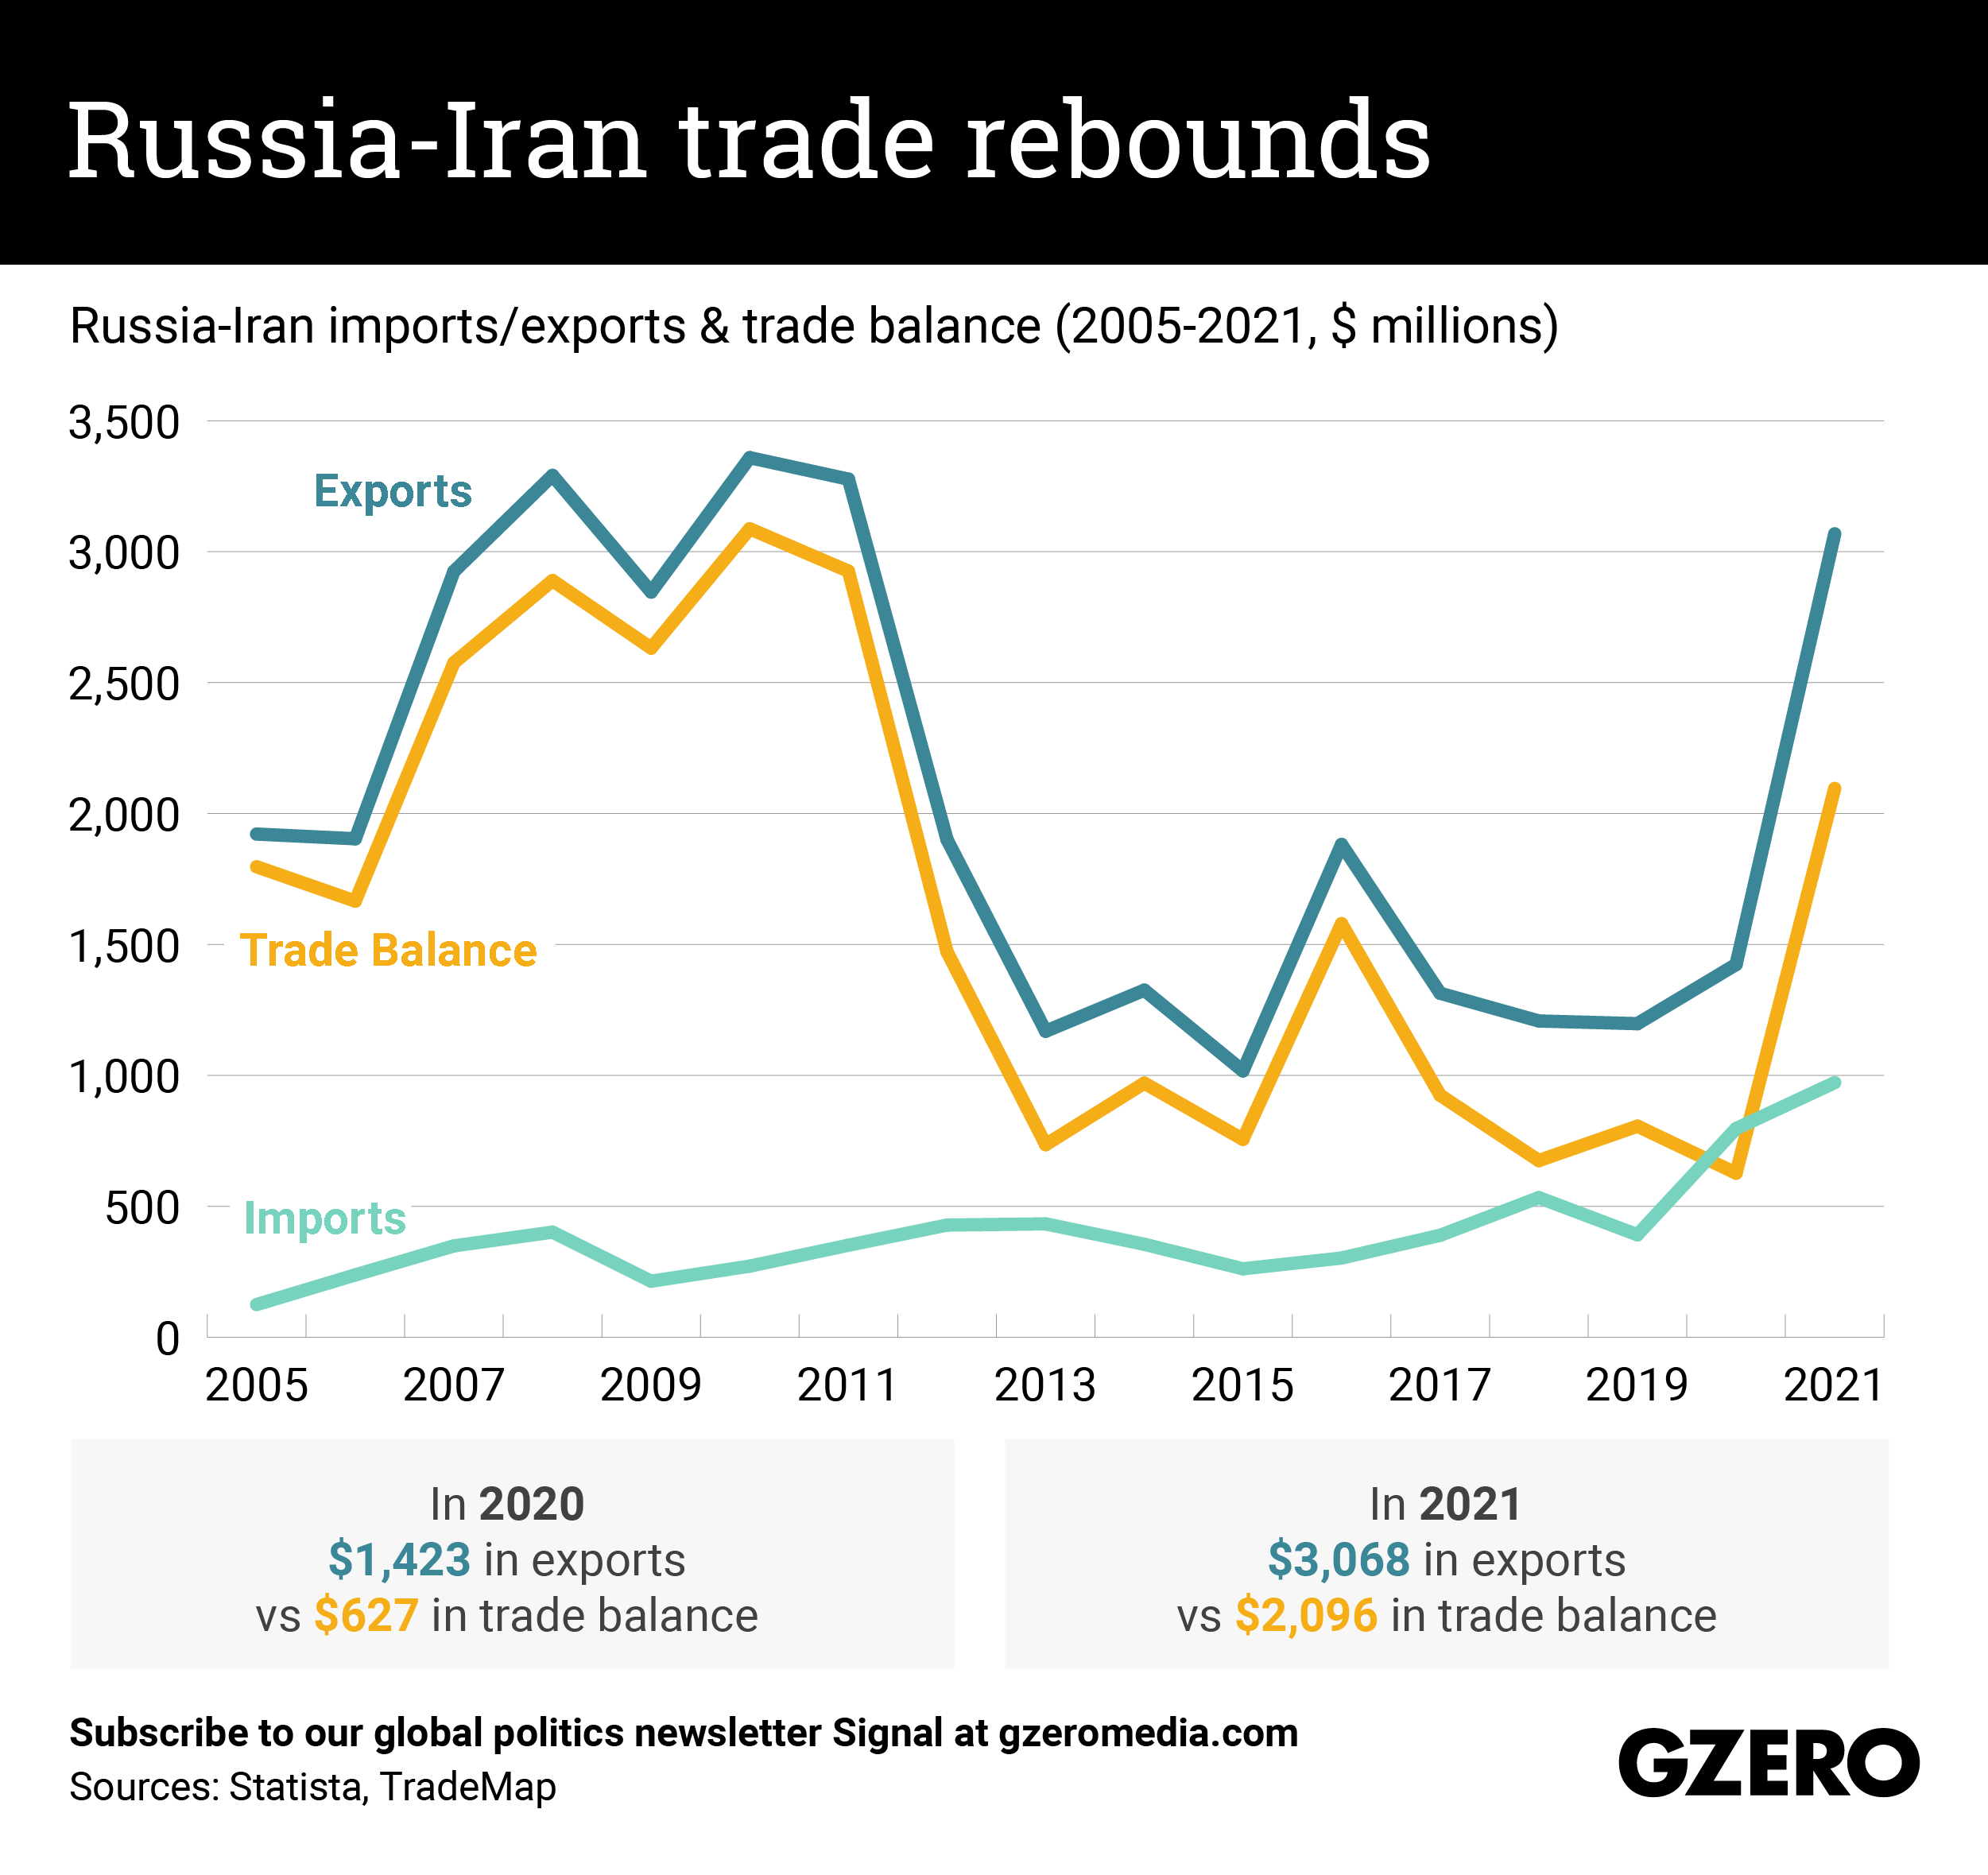 The Graphic Truth: Russia-Iran trade rebounds